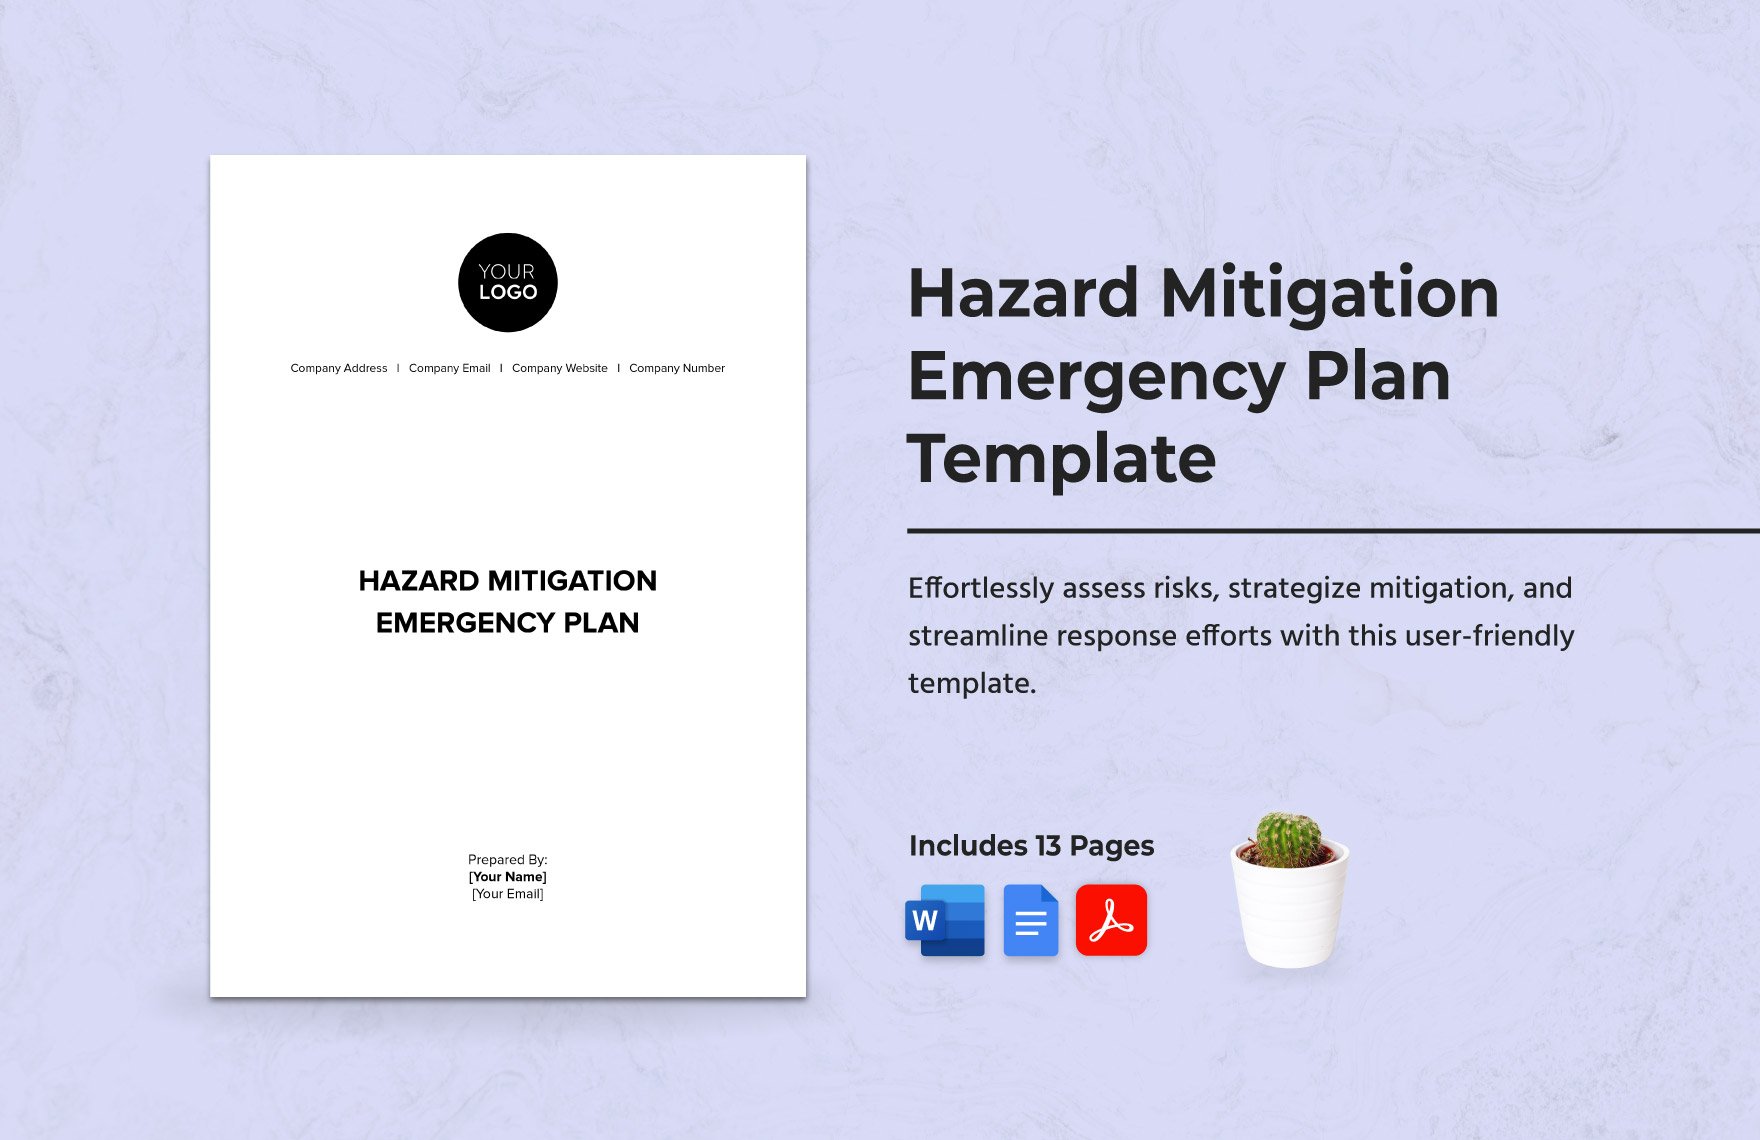 Hazard Mitigation Emergency Plan Template